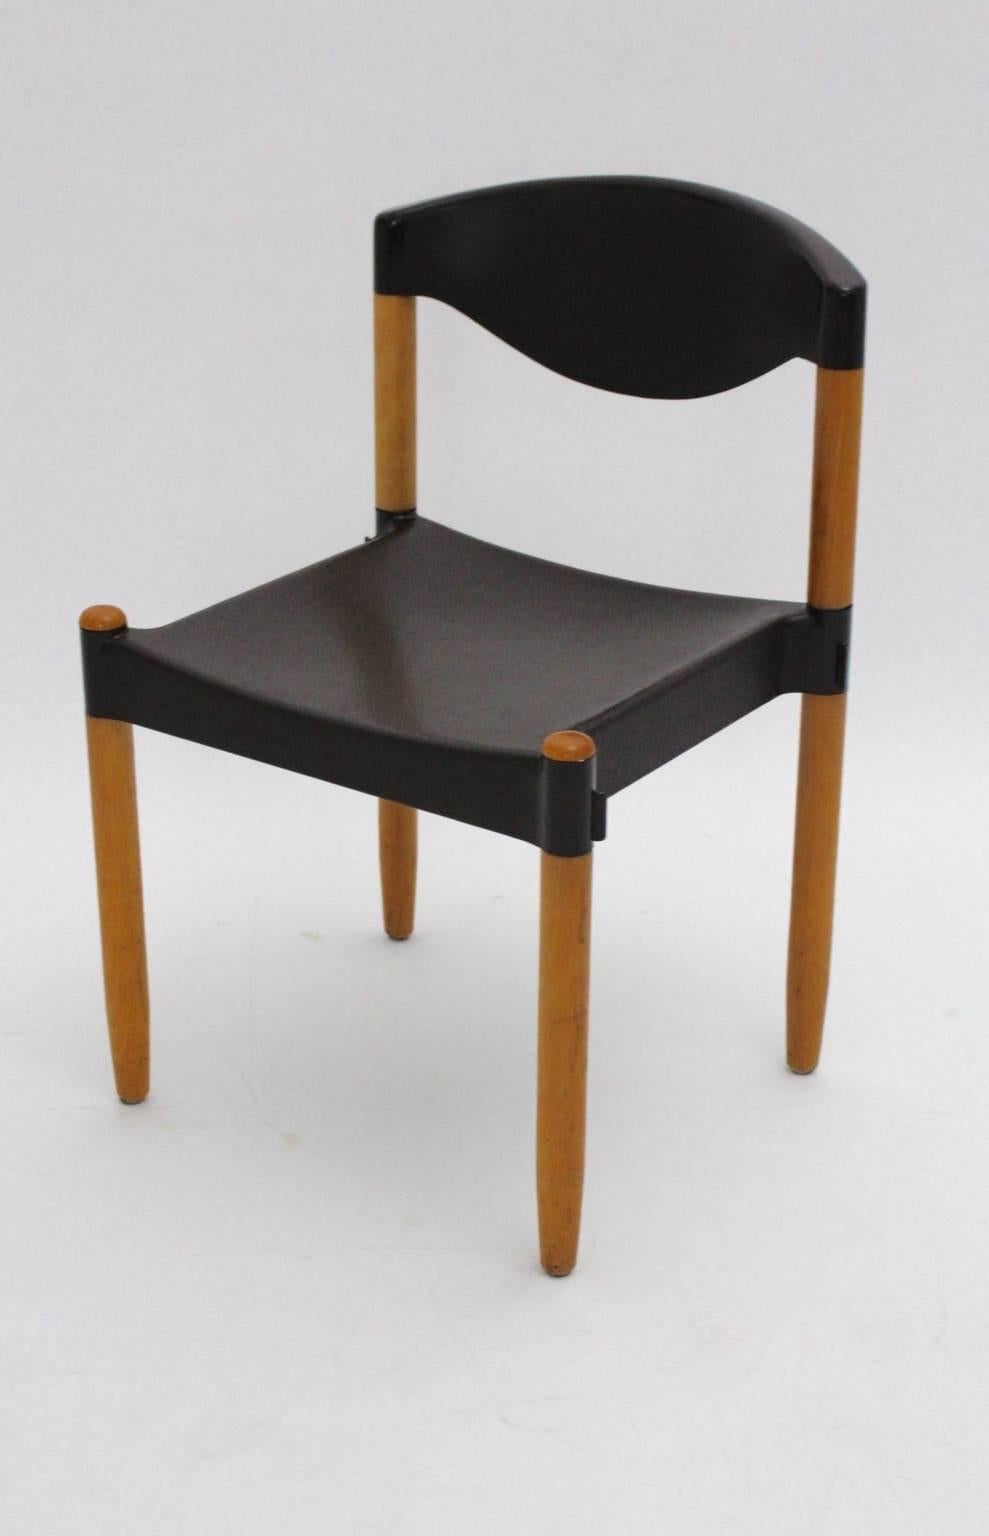 Ein Satz von acht modernen Esszimmerstühlen aus der Mitte des Jahrhunderts namens Strax, die von Hartmut Lohmeyer in den 1970er Jahren entworfen wurden.
Das Besondere an diesen Stühlen ist, dass man sie stapeln und mit einem integrierten